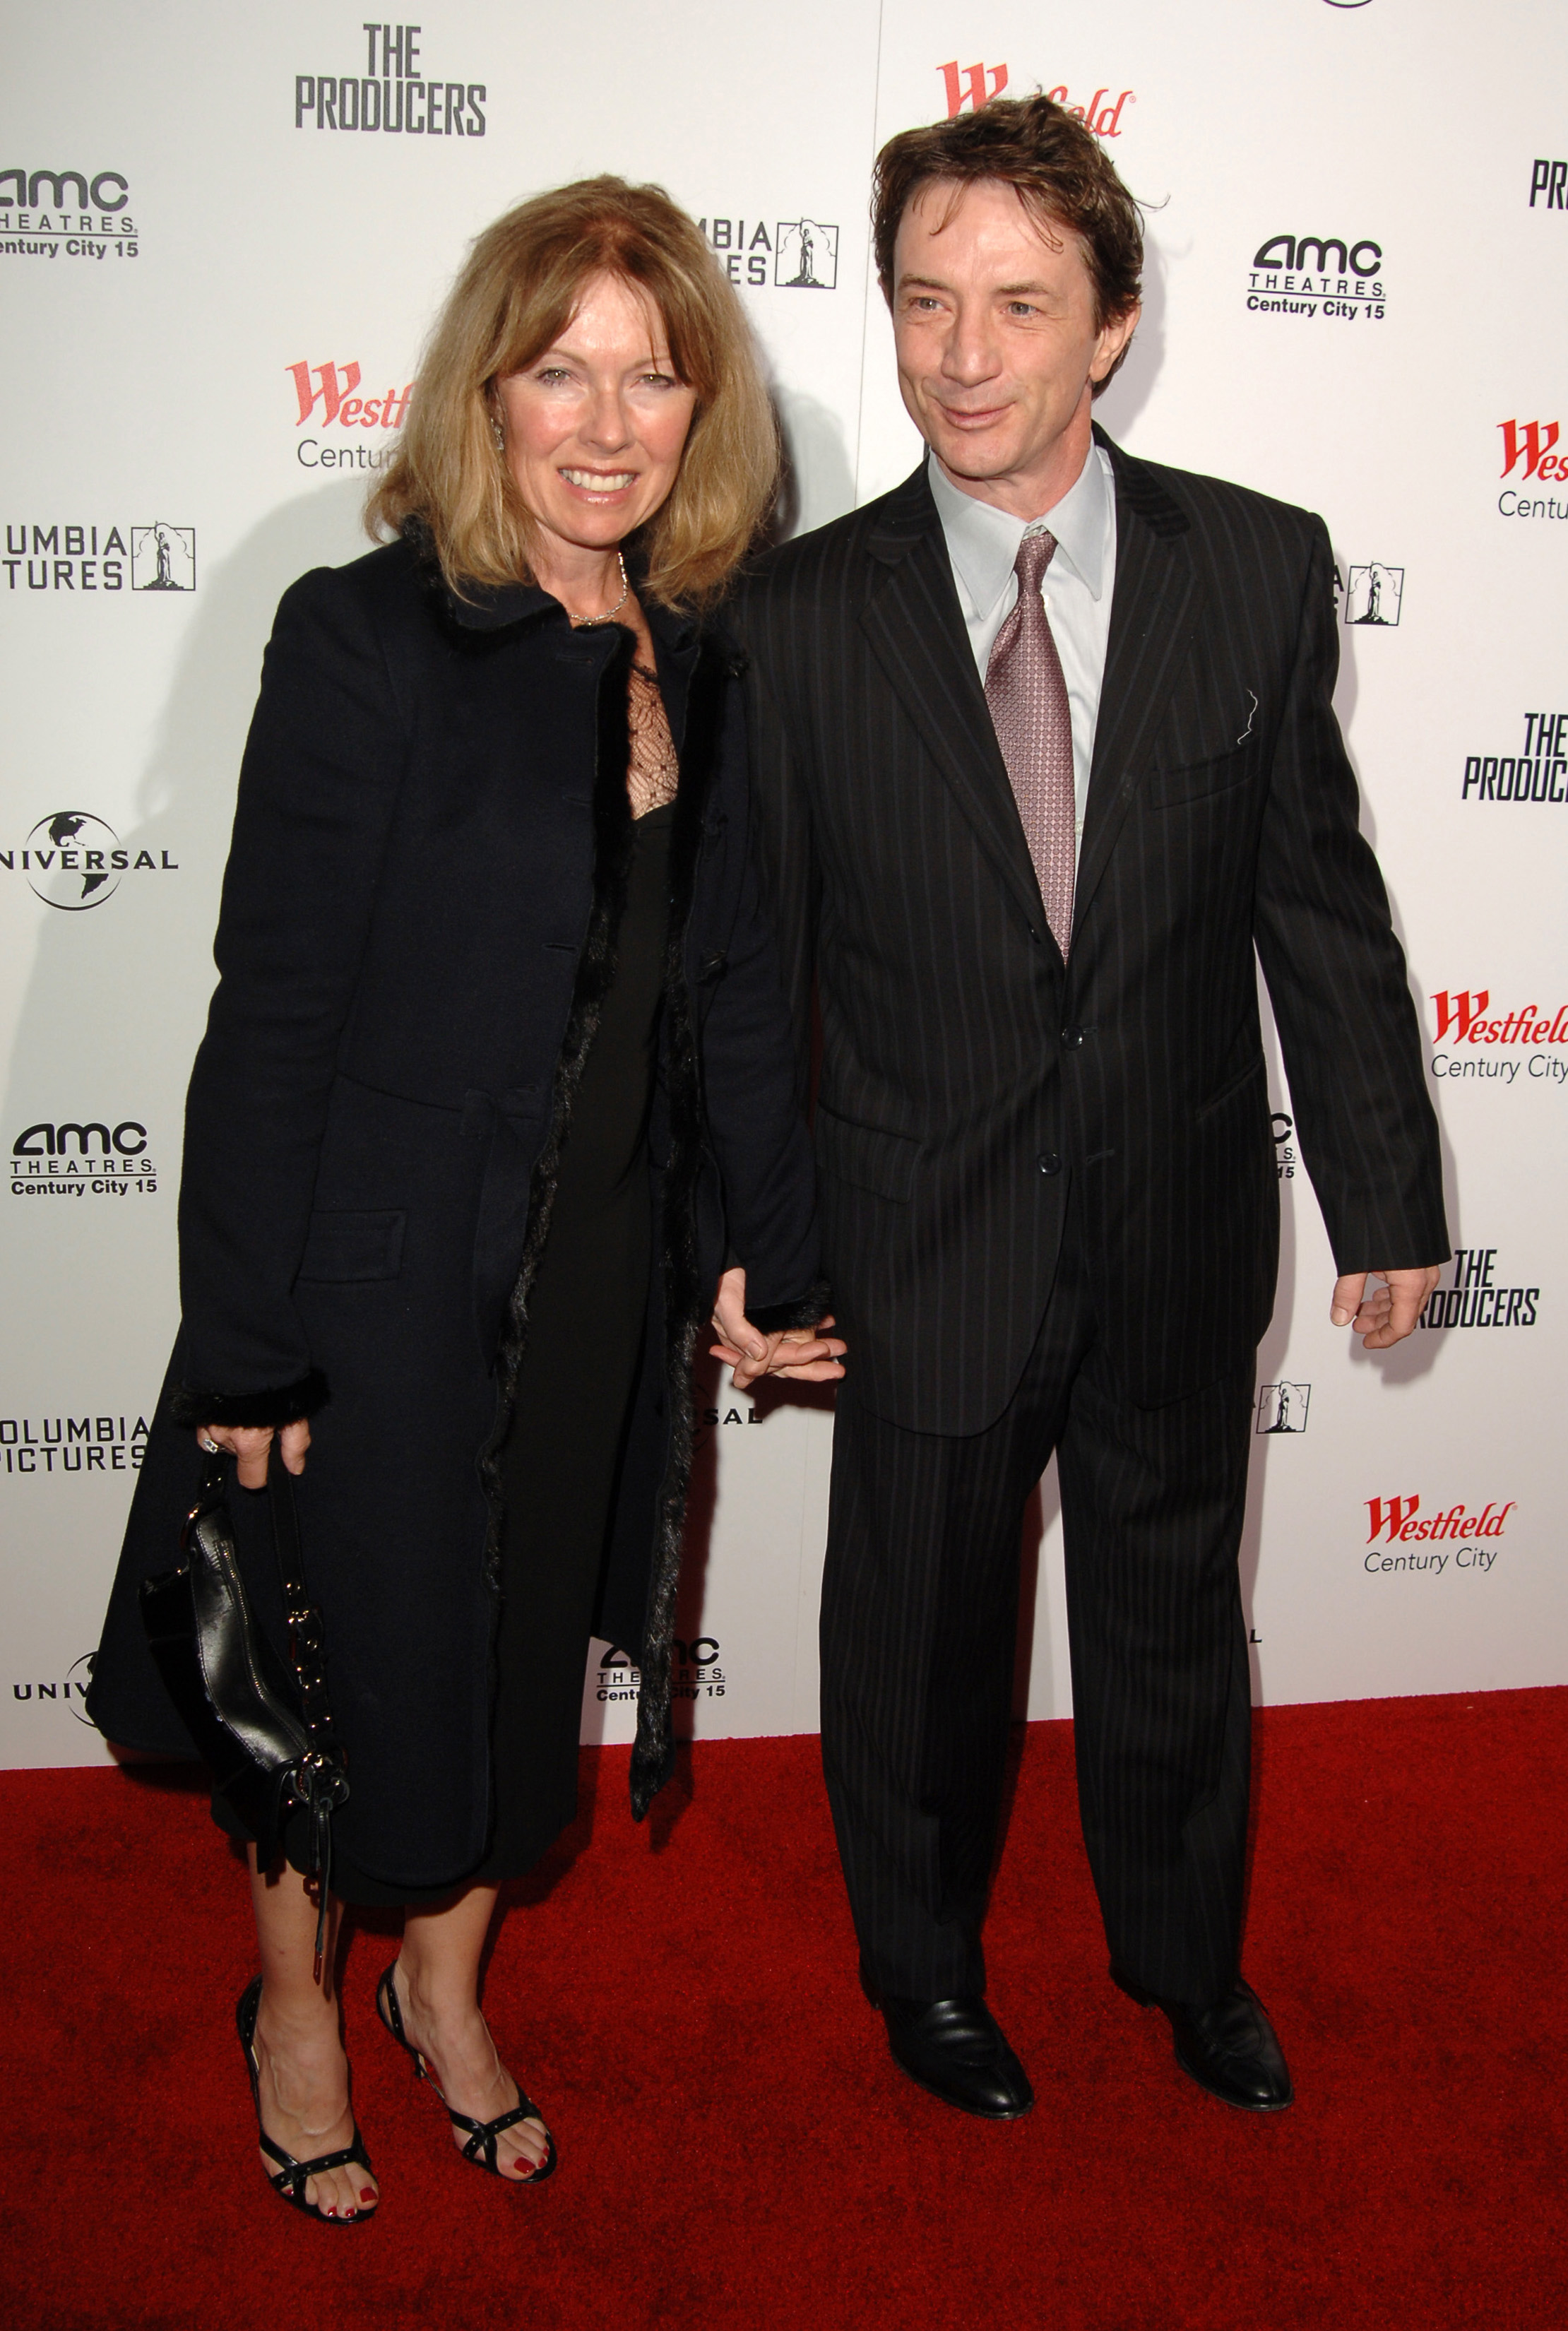 Nancy Dolman et Martin Short à la première mondiale de "The Producers" d'Universal Pictures - Arrivées, le 12 décembre 2005. | Source : Getty Images